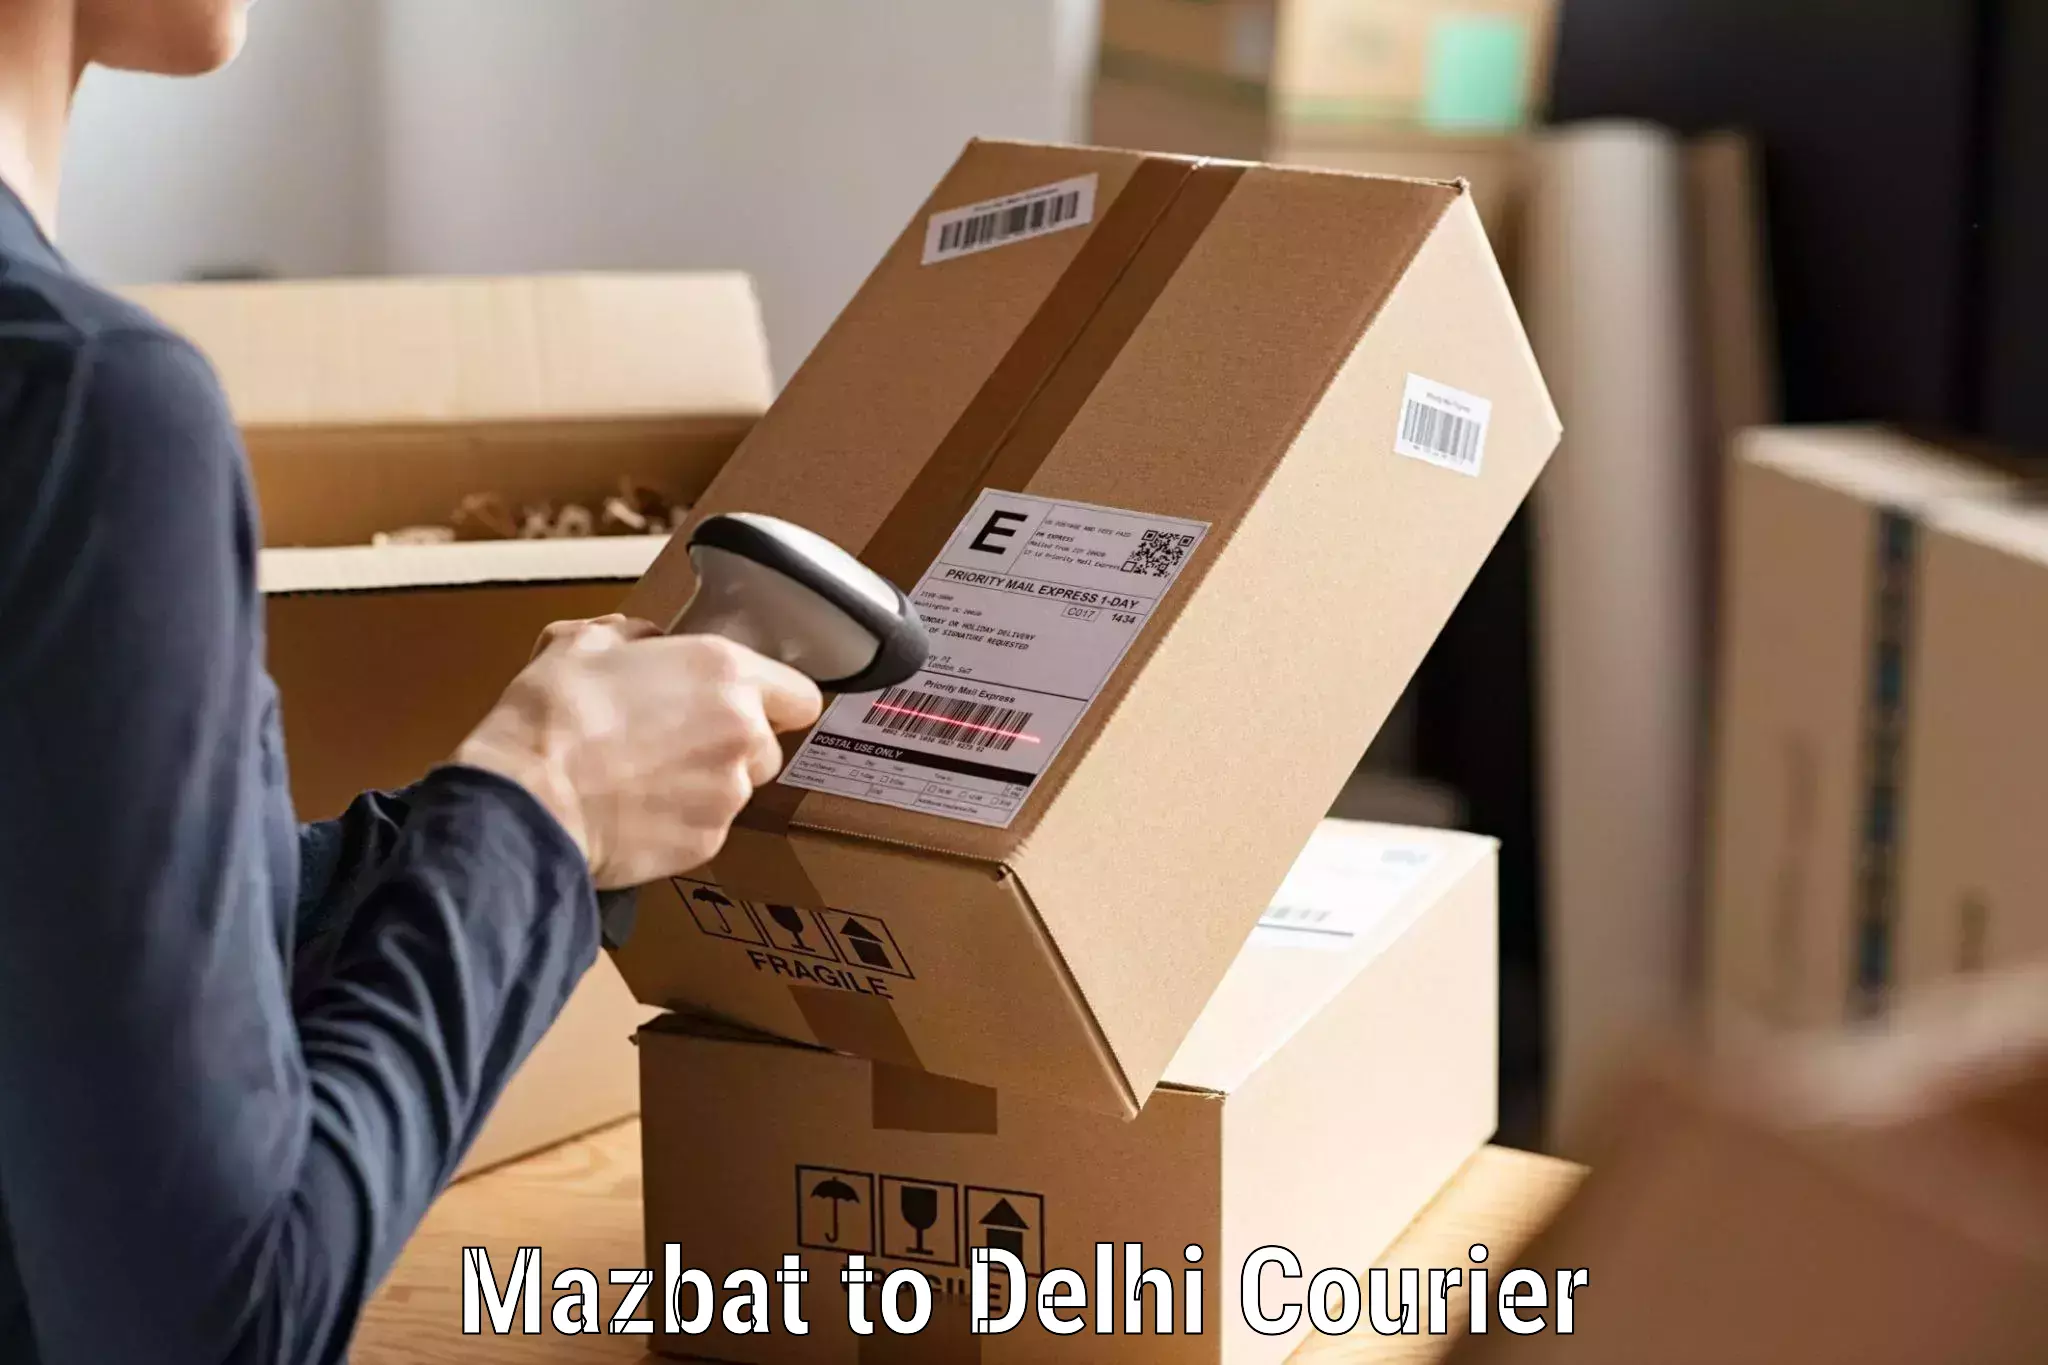 Express logistics providers Mazbat to Krishna Nagar